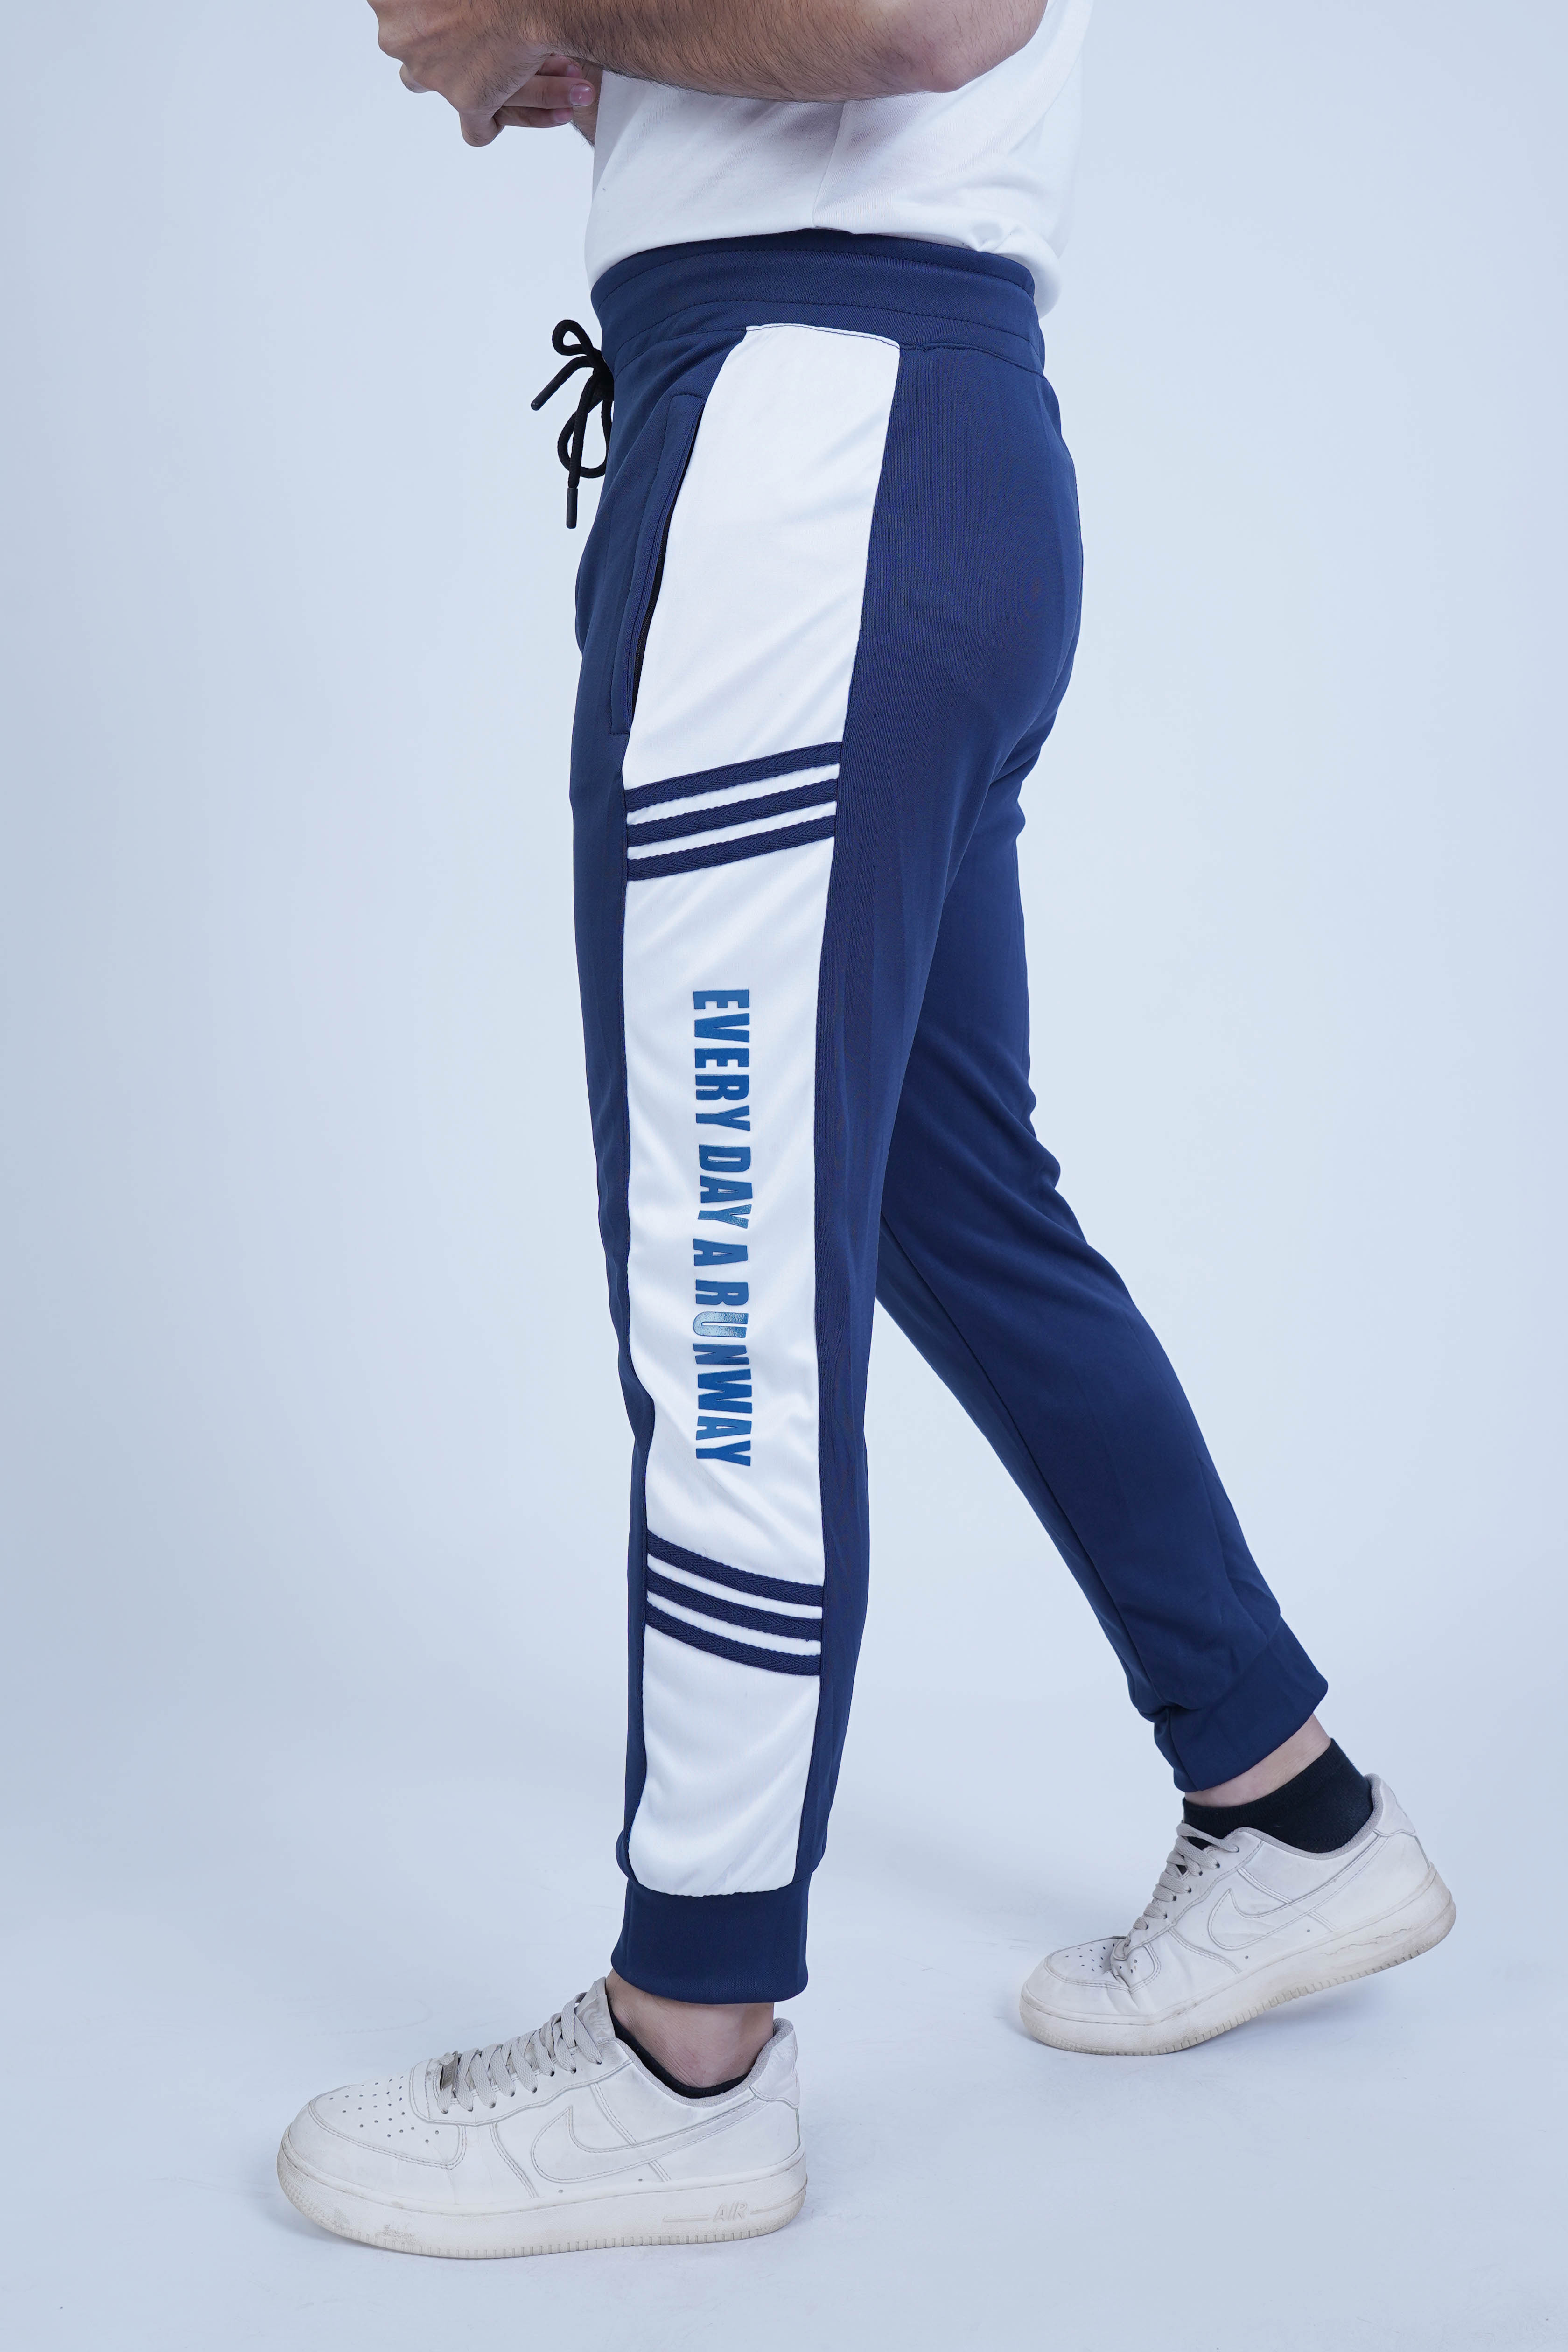 Runway Navy Blue Men Fashion Trouser - The Xea Men's Clothing